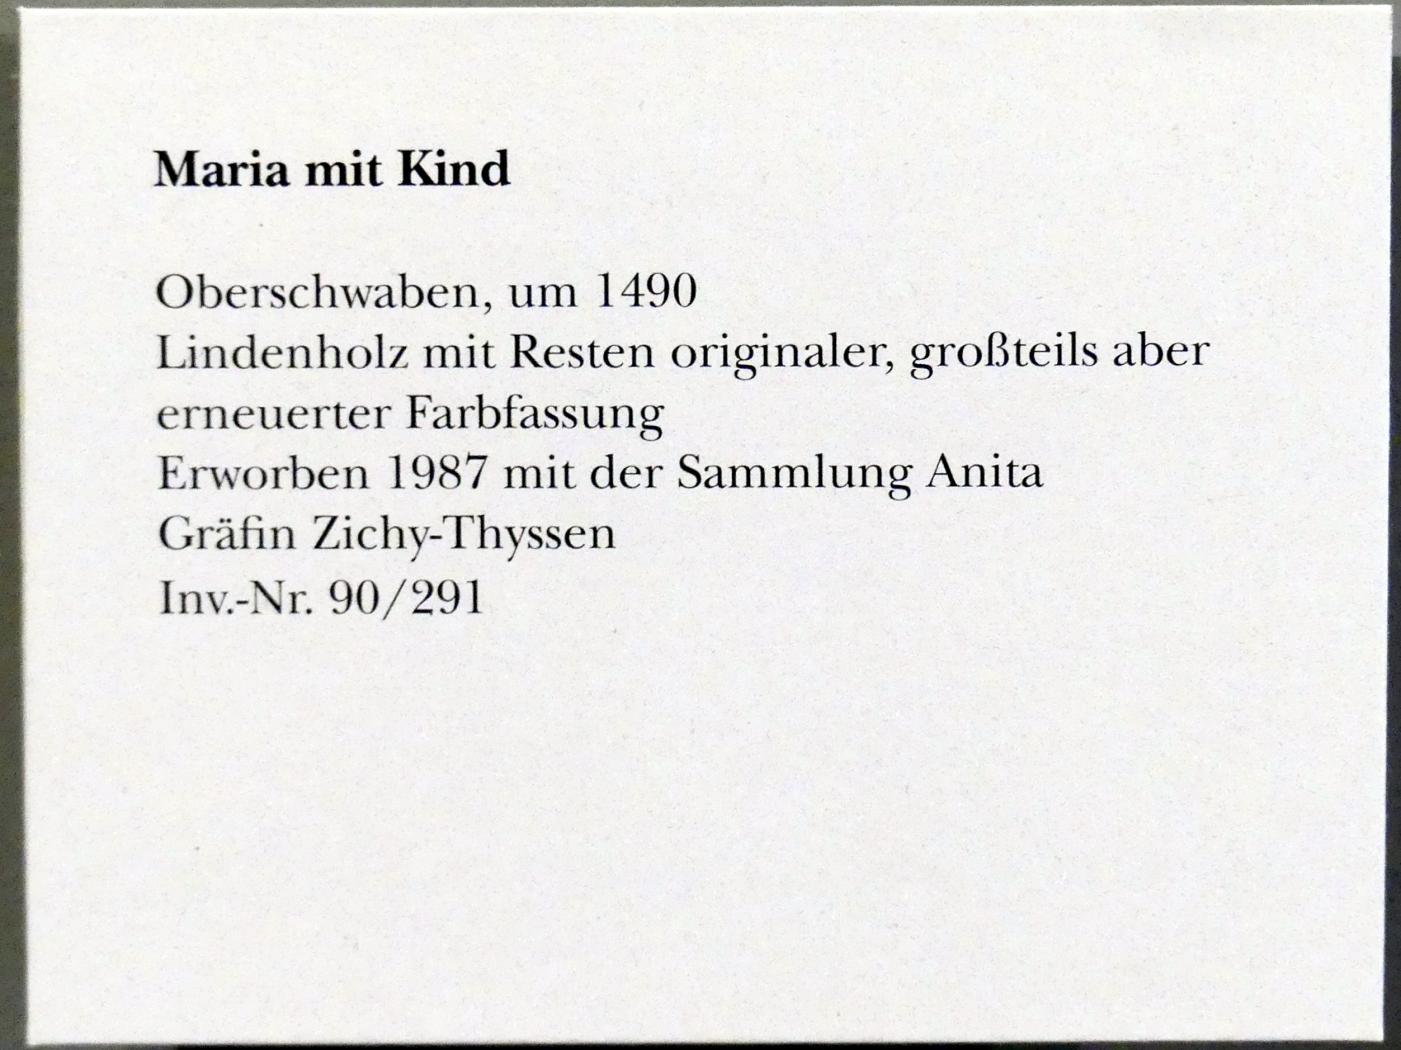 Maria mit Kind, München, Bayerisches Nationalmuseum, Saal 15, um 1490, Bild 5/5